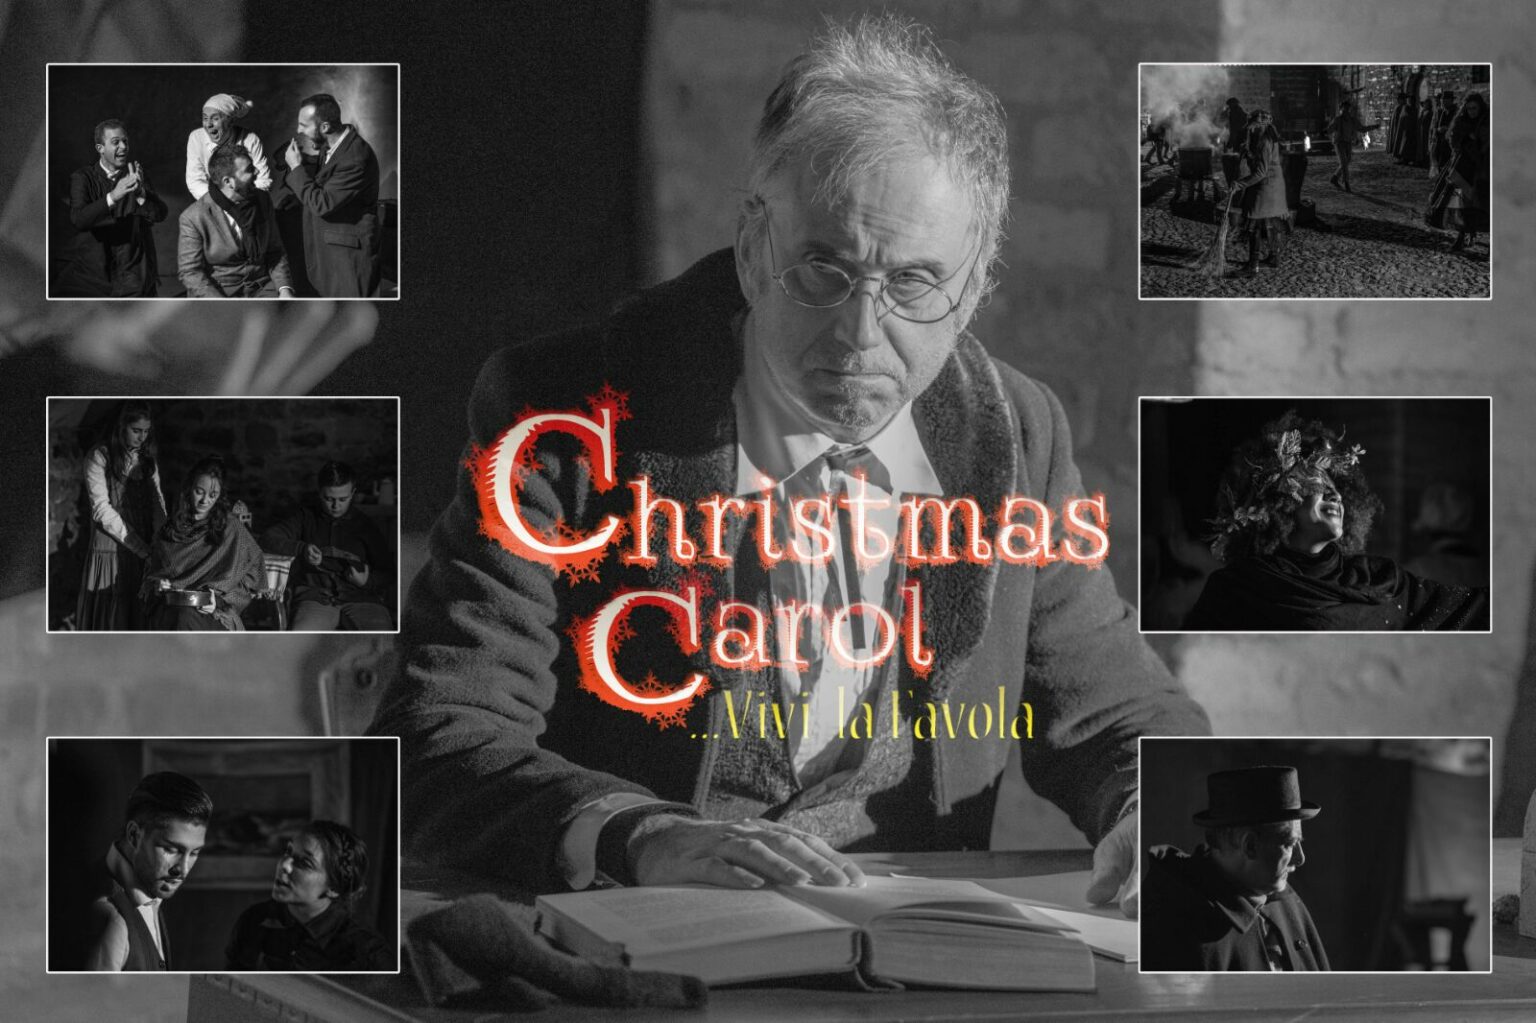 Christmas Carol – Vivi la Favola